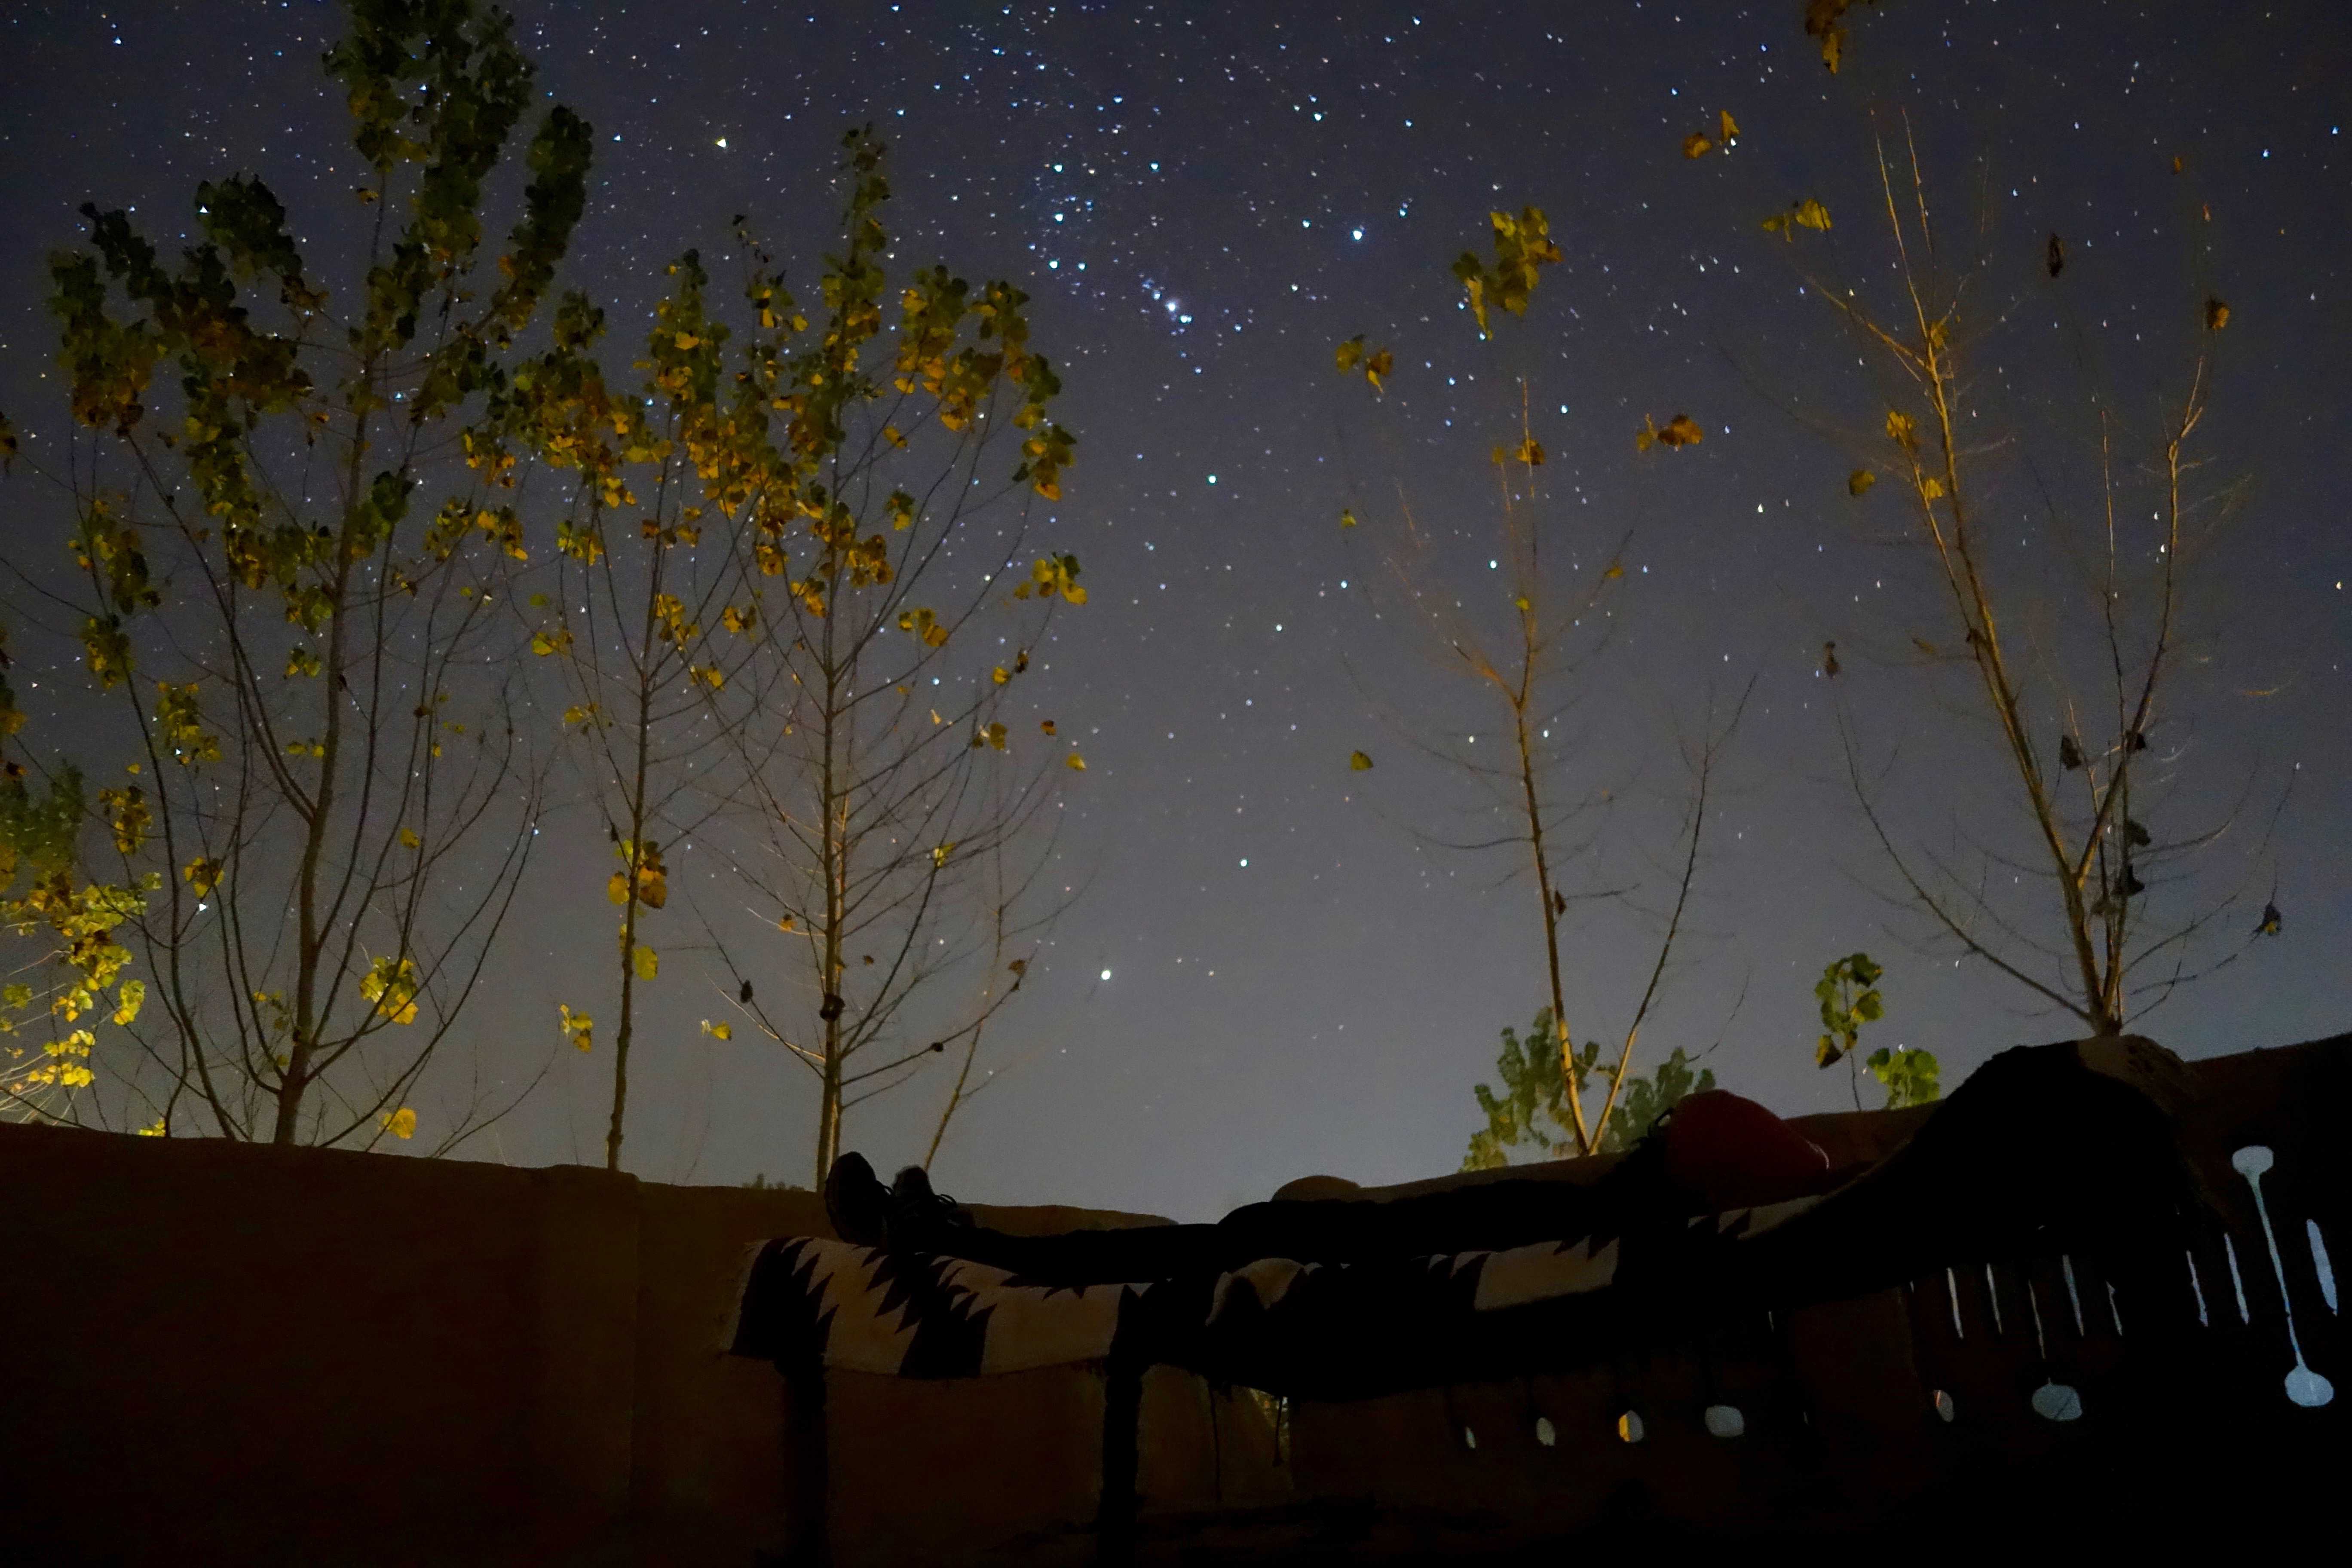 Punjab stargazing